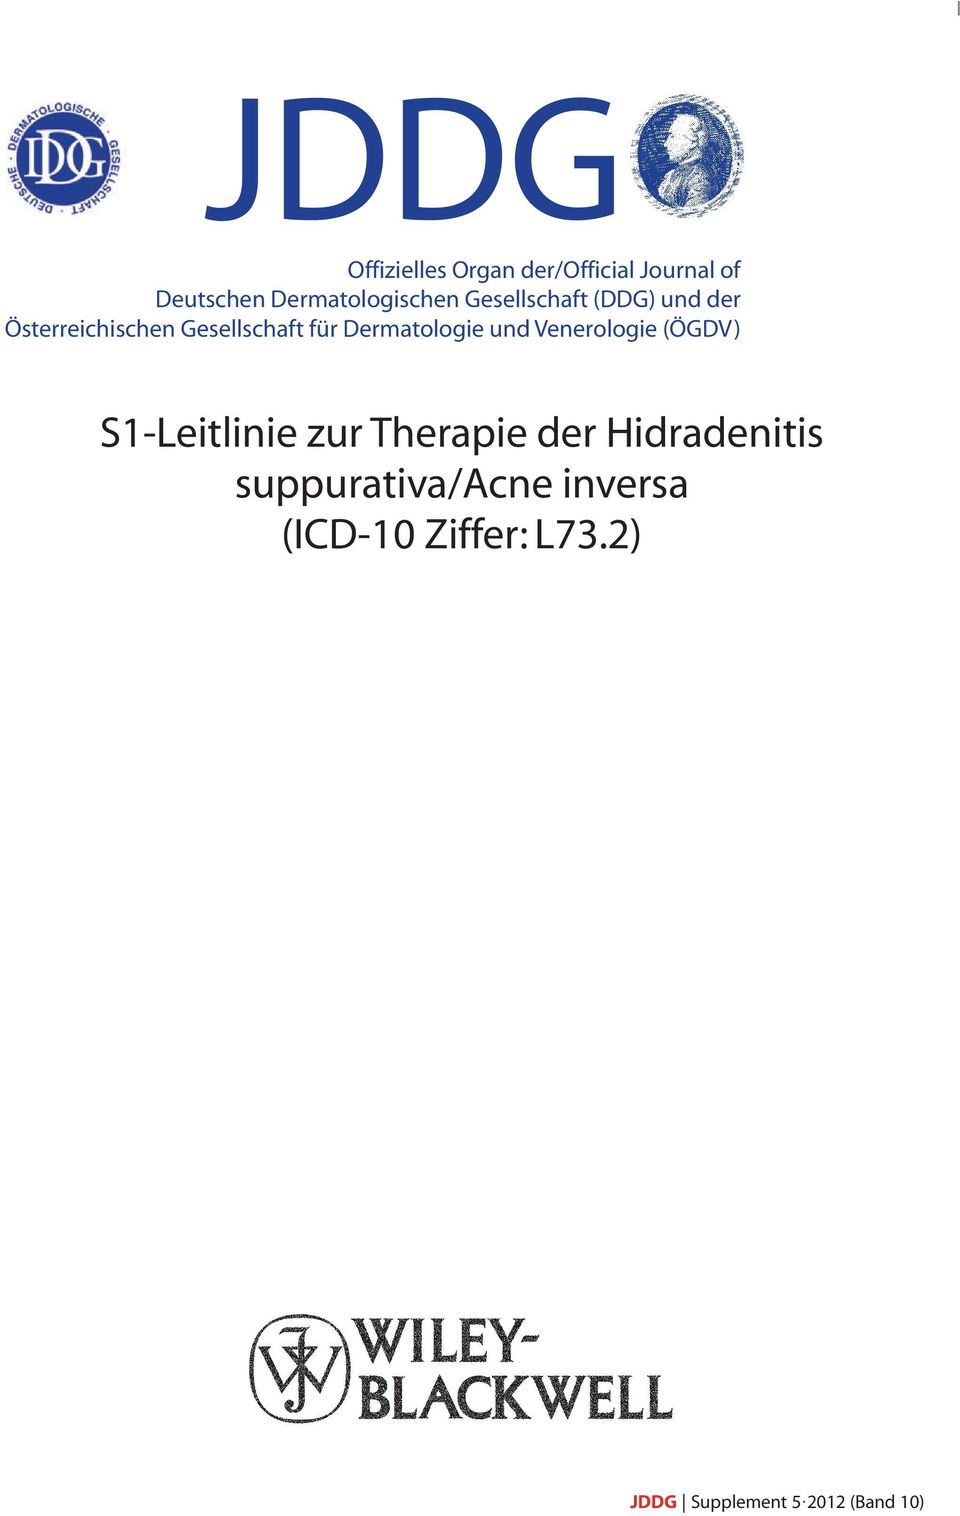 Jddg S1 Leitlinie Zur Therapie Der Hidradenitis Suppurativa Acne Inversa Icd 10 Ziffer L73 2 Pdf Free Download